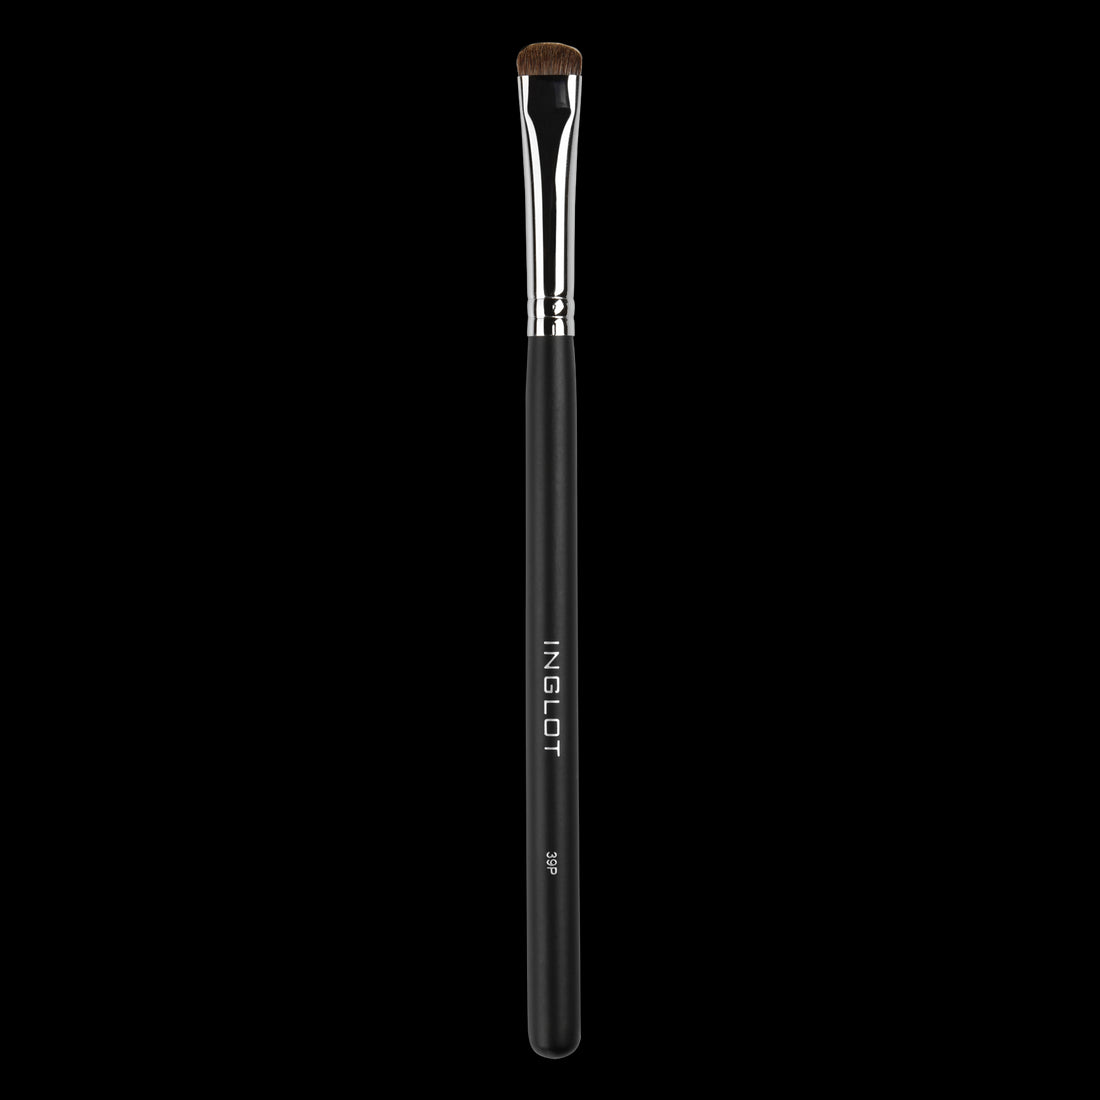 Makeup Brush 39P - Inglot Cosmetics